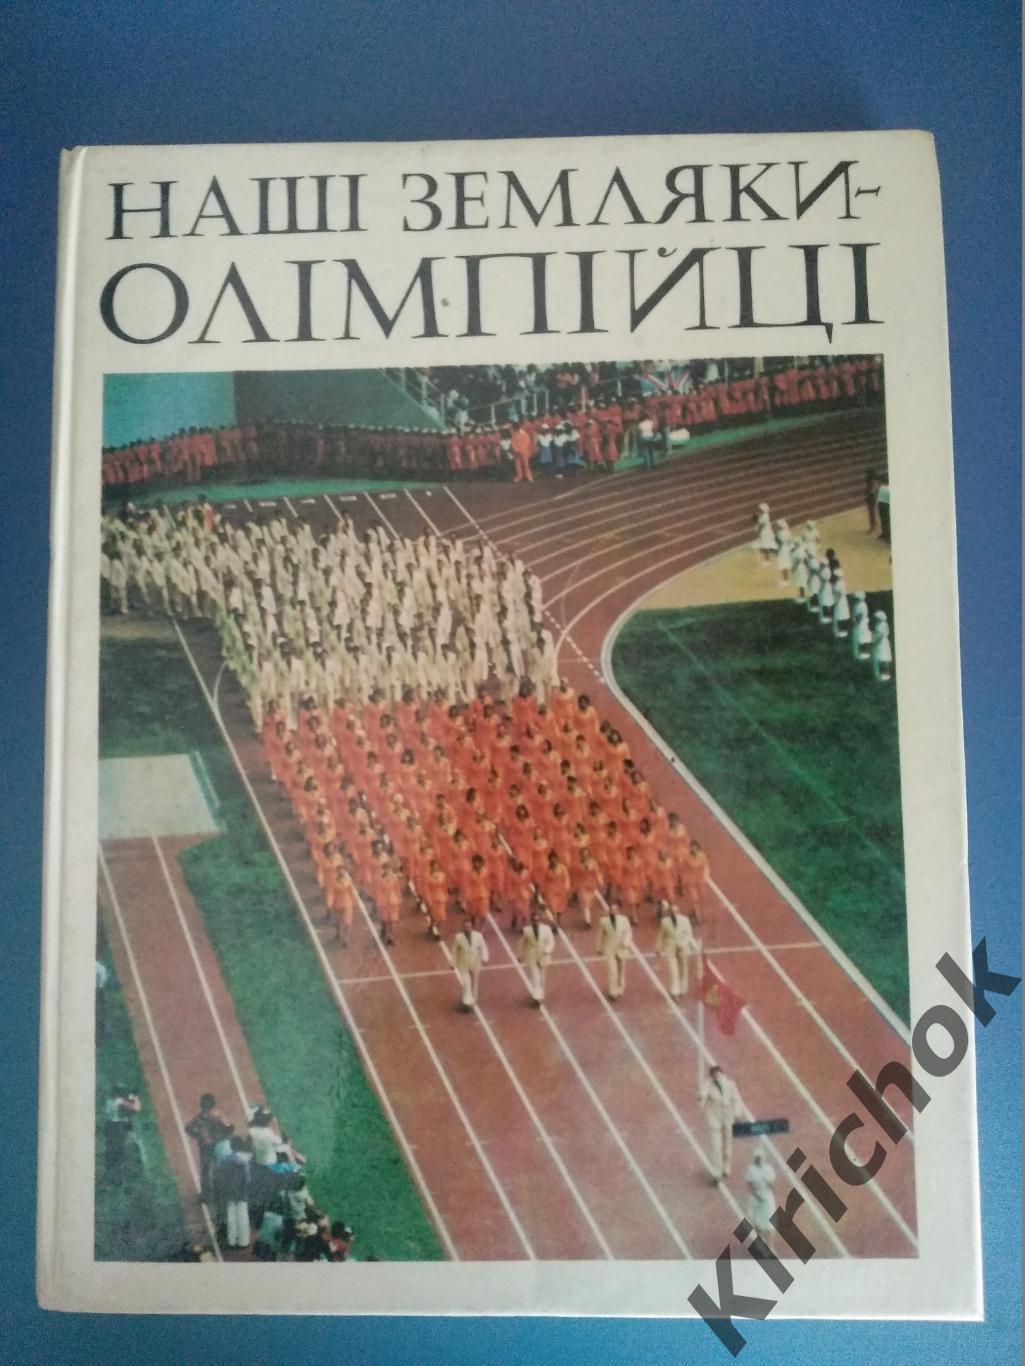 Книга: Наши земляки-олимпийцы. Киев 1978. Баскетбол, волейбол, водное поло СССР